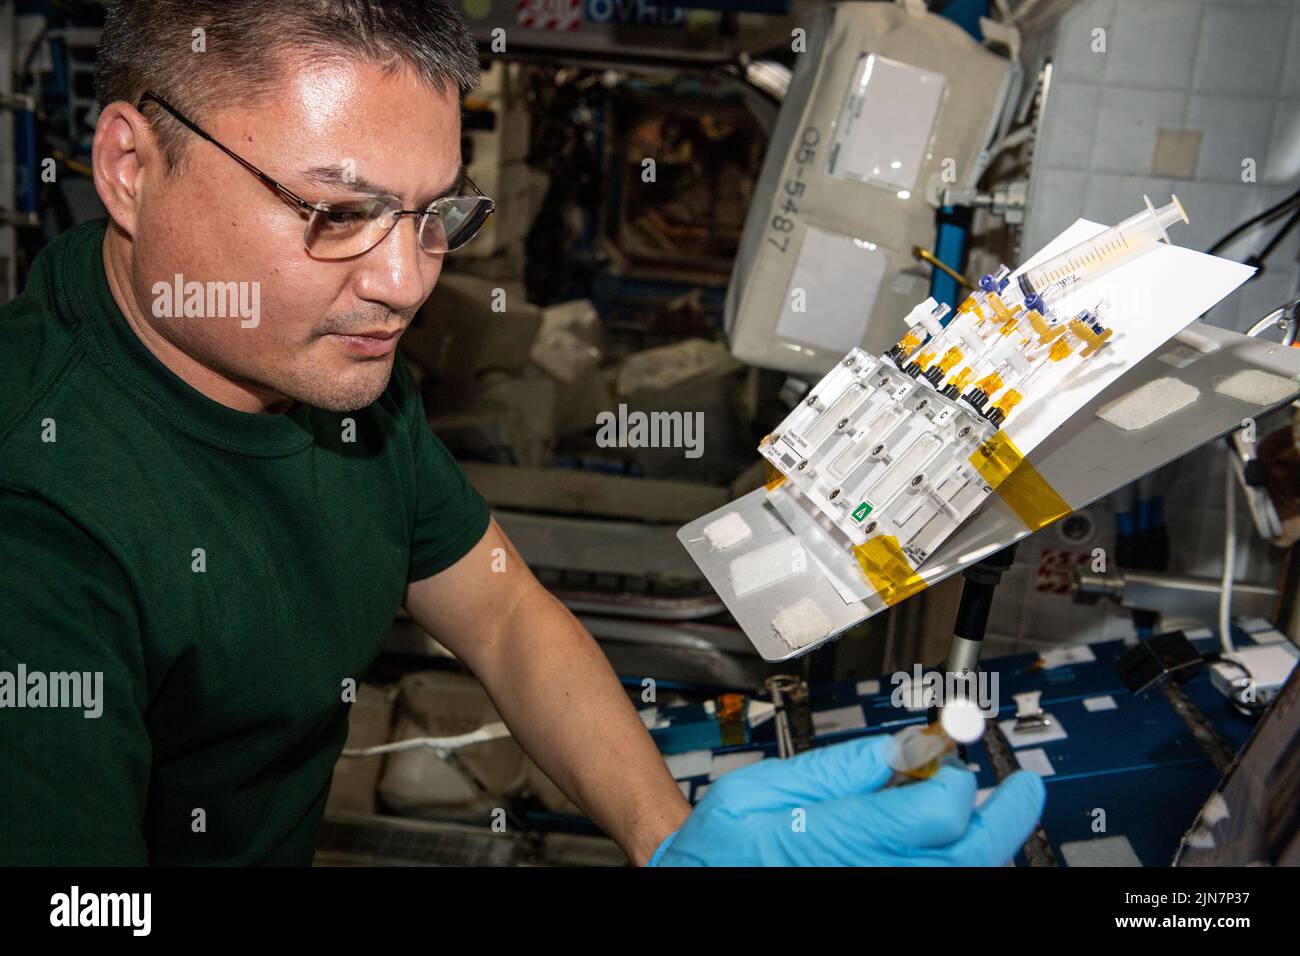 Atmósfera de la Tierra. 19th de julio de 2022. El astronauta Kjell Lindgren prueba membranas reactivas para la recuperación de agua en microgravedad en comparación con 1g en la Tierra. Crédito: NASA/ZUMA Press Wire Service/ZUMAPRESS.com/Alamy Live News Foto de stock